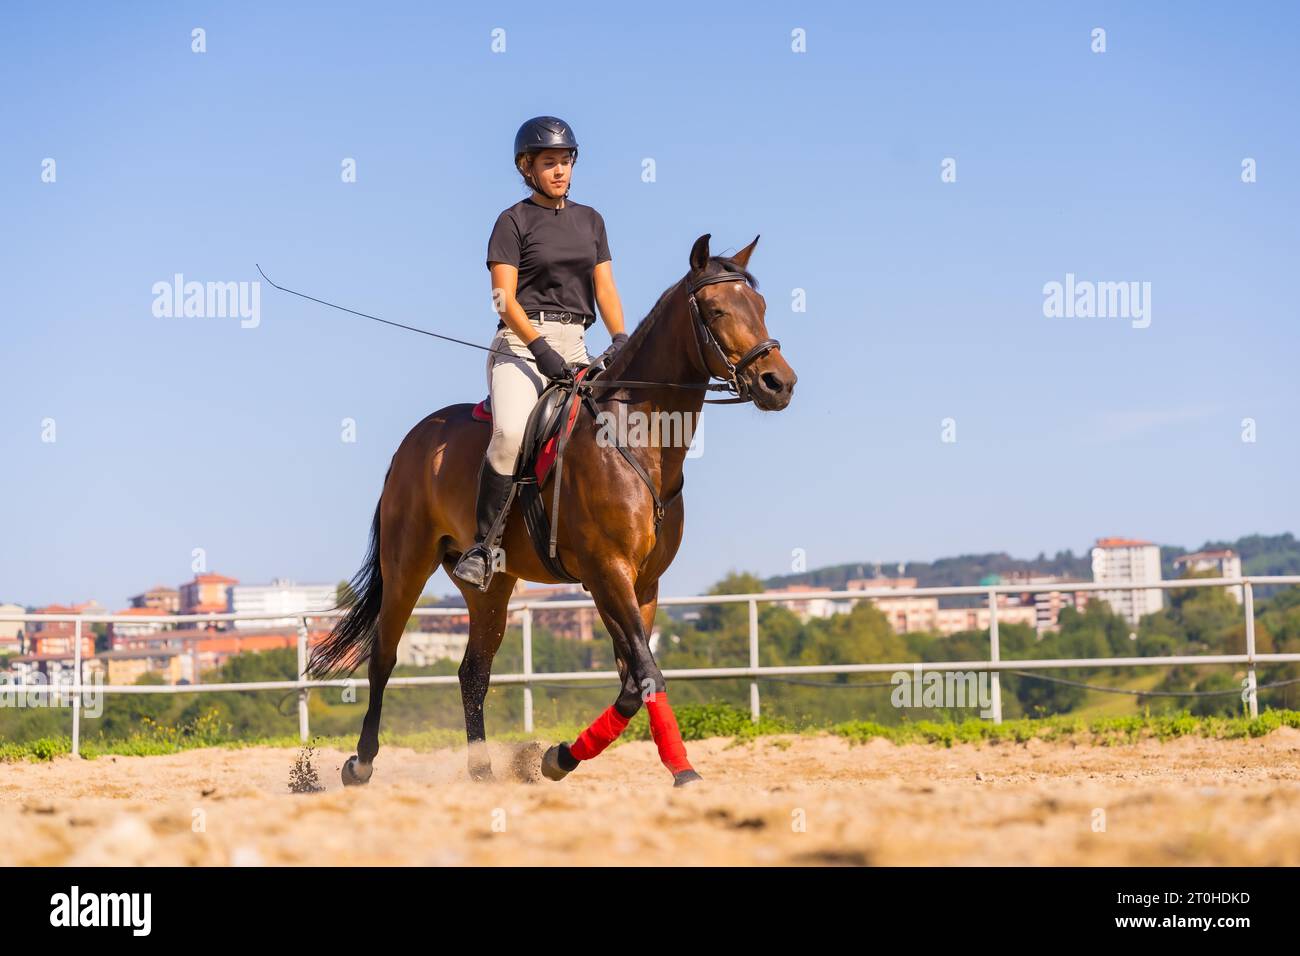 Junge kaukasische Blonde, die auf einem Pferd reitet, mit einem braunen Pferd, gekleidet mit schwarzem Reiter mit Schutzkappe Stockfoto